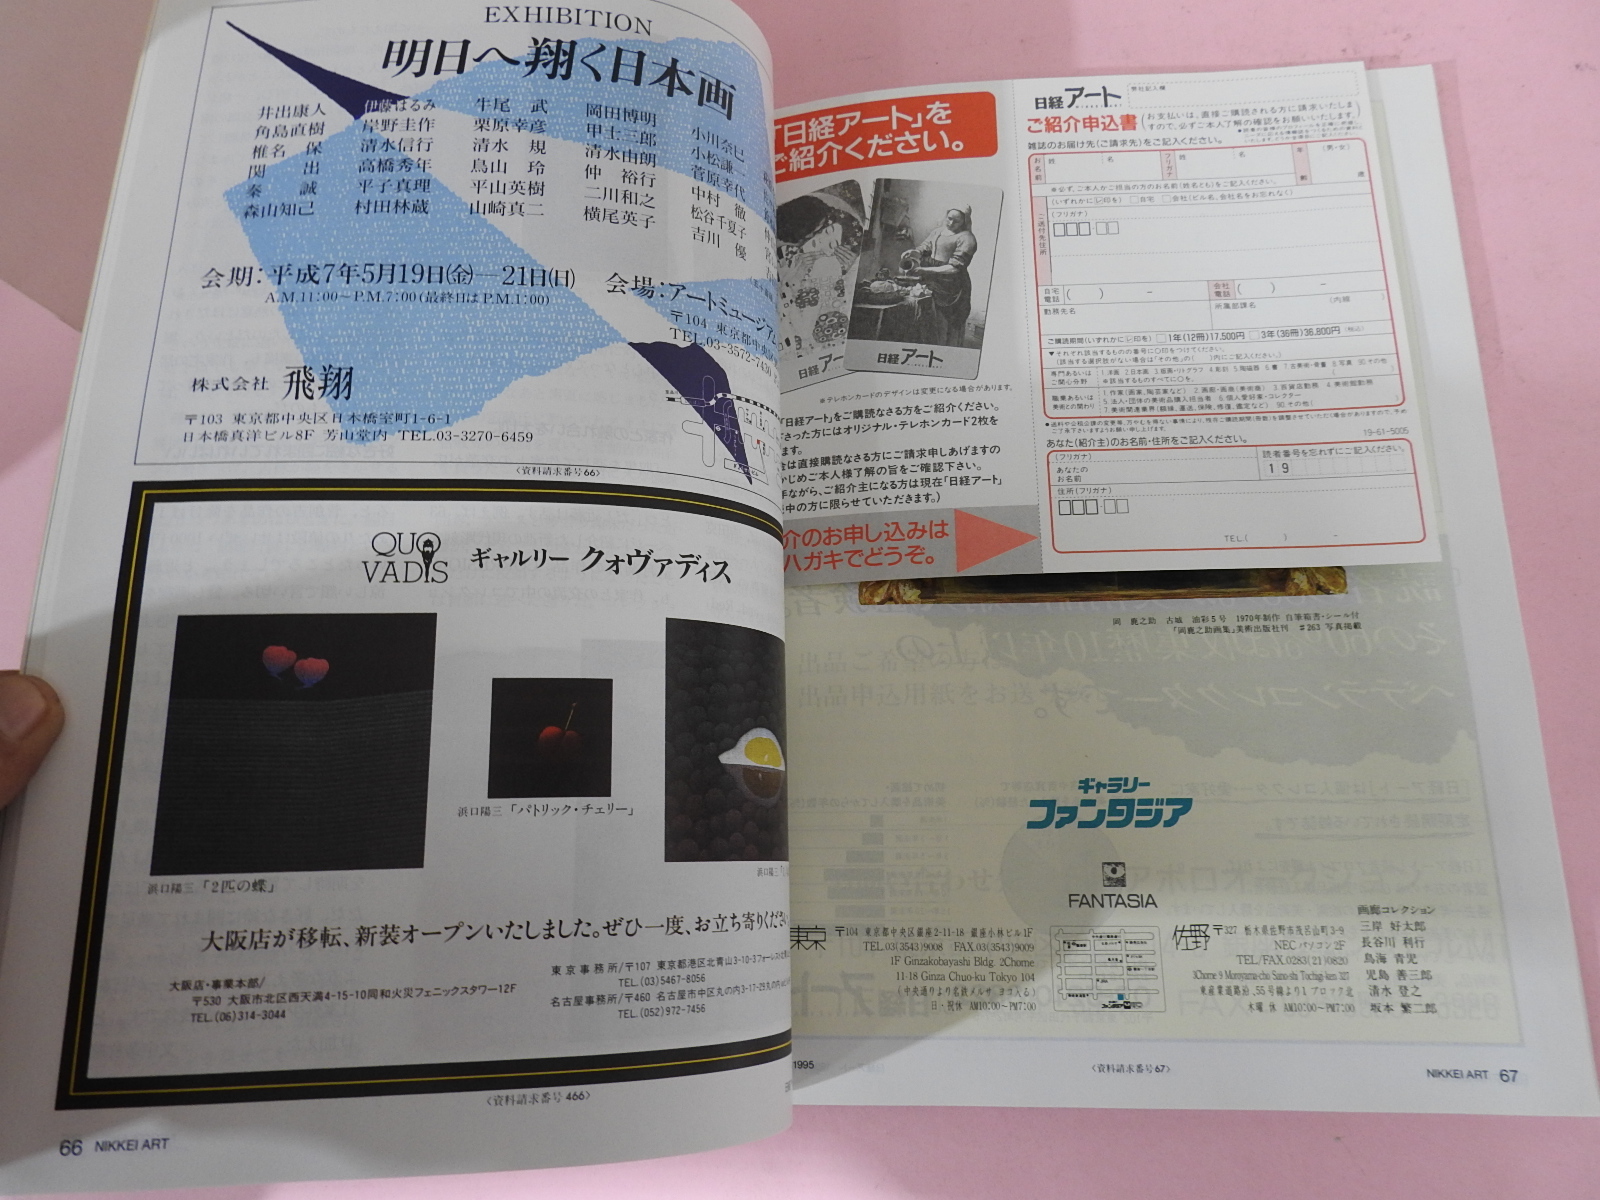 1995년 일본미술품잡지